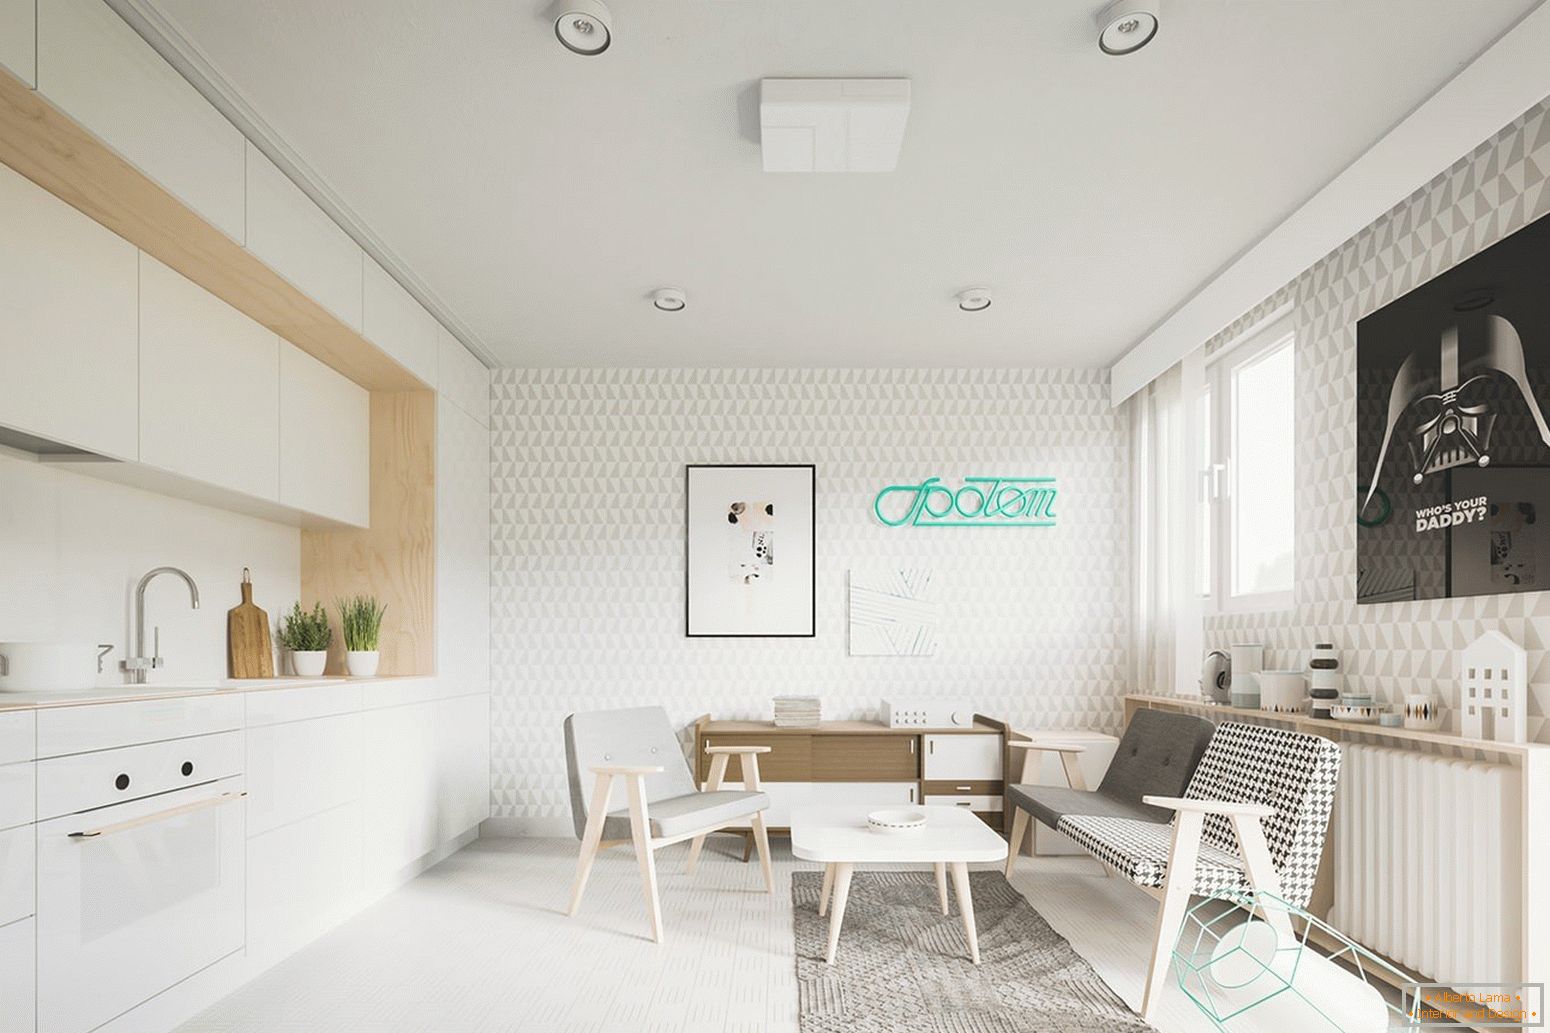 Studio-Apartment mit Küche an der Wand